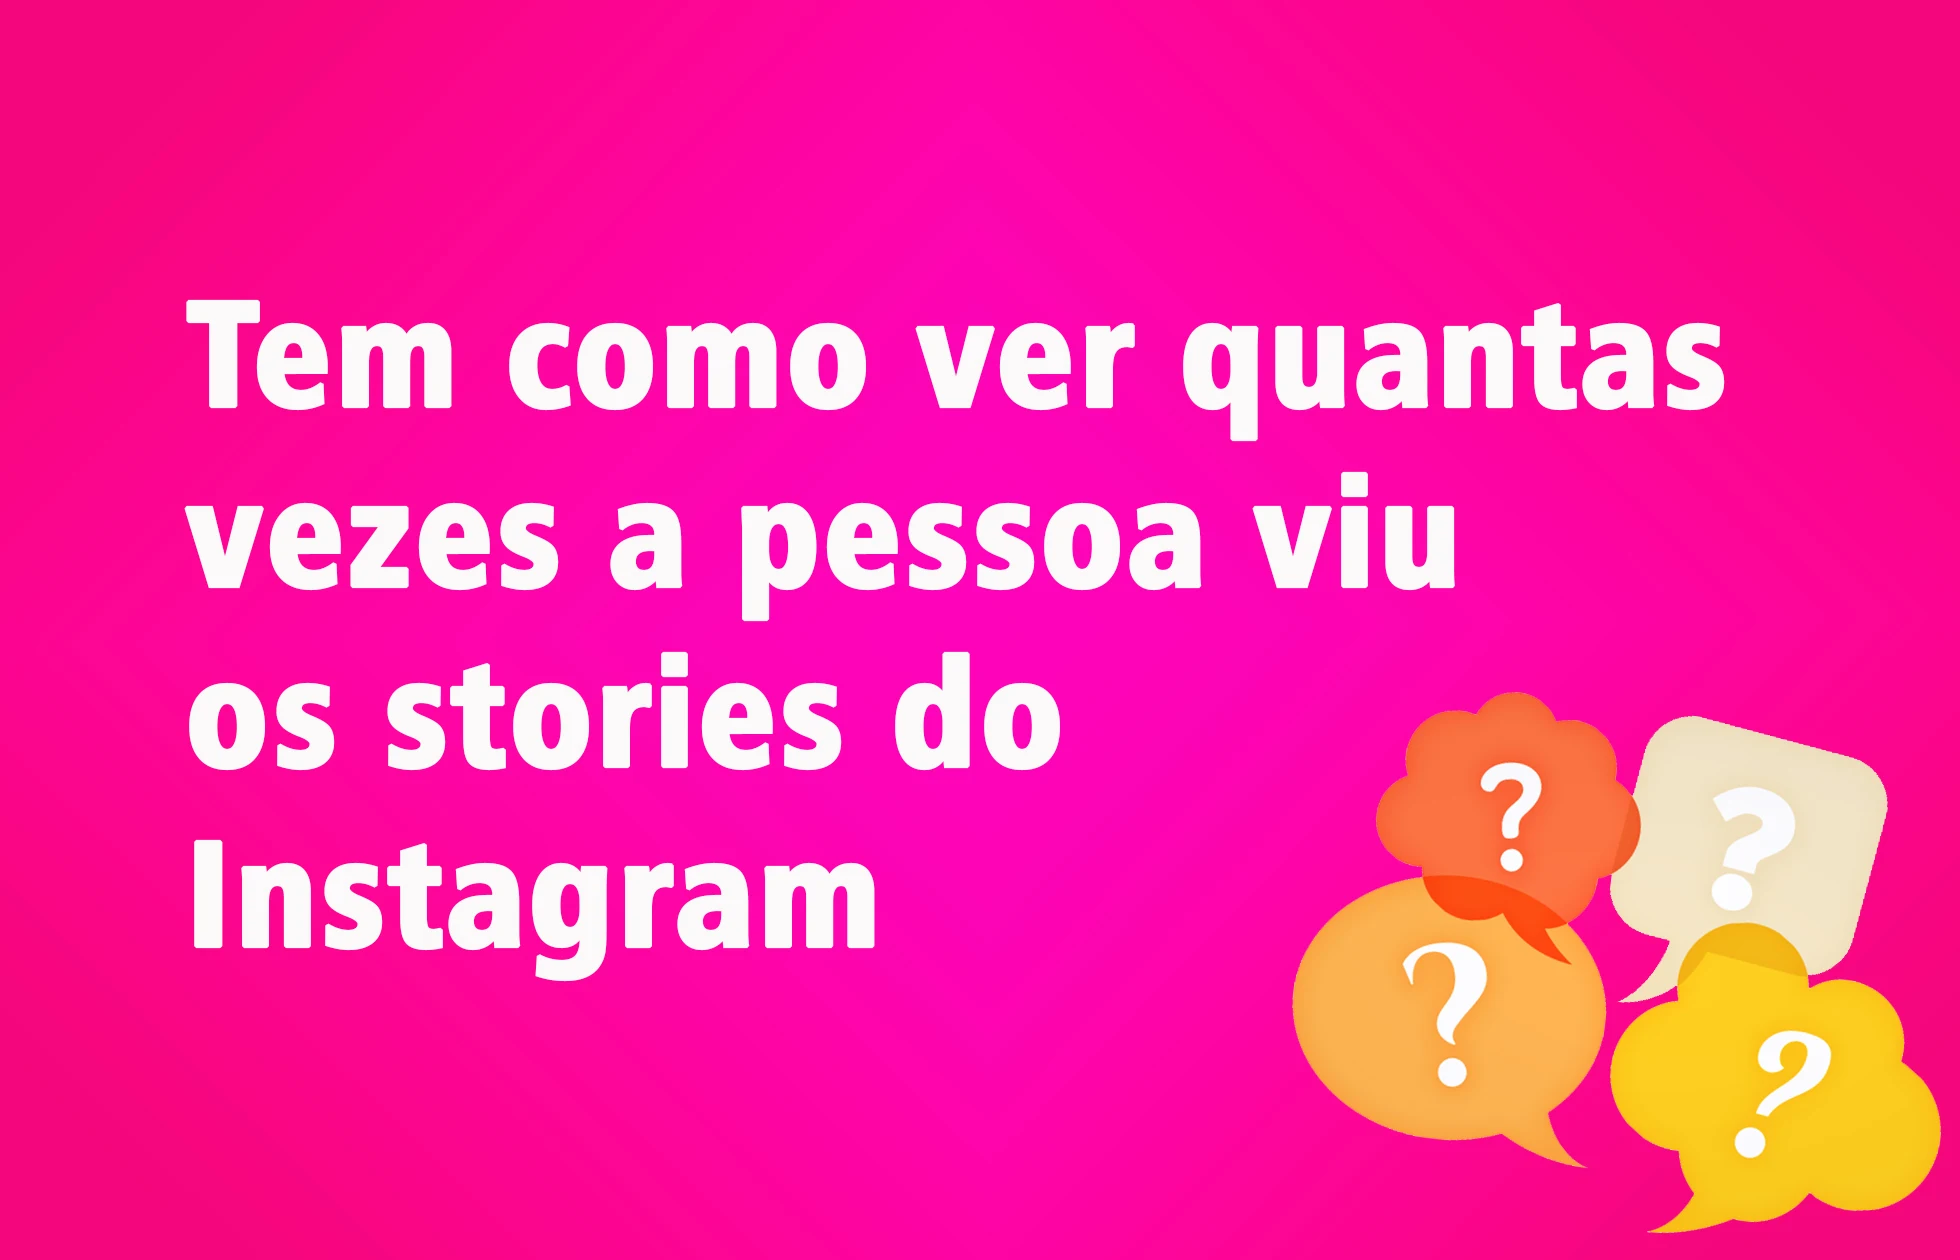 Tem como ver quantas vezes a pessoa viu os stories do Instagram?